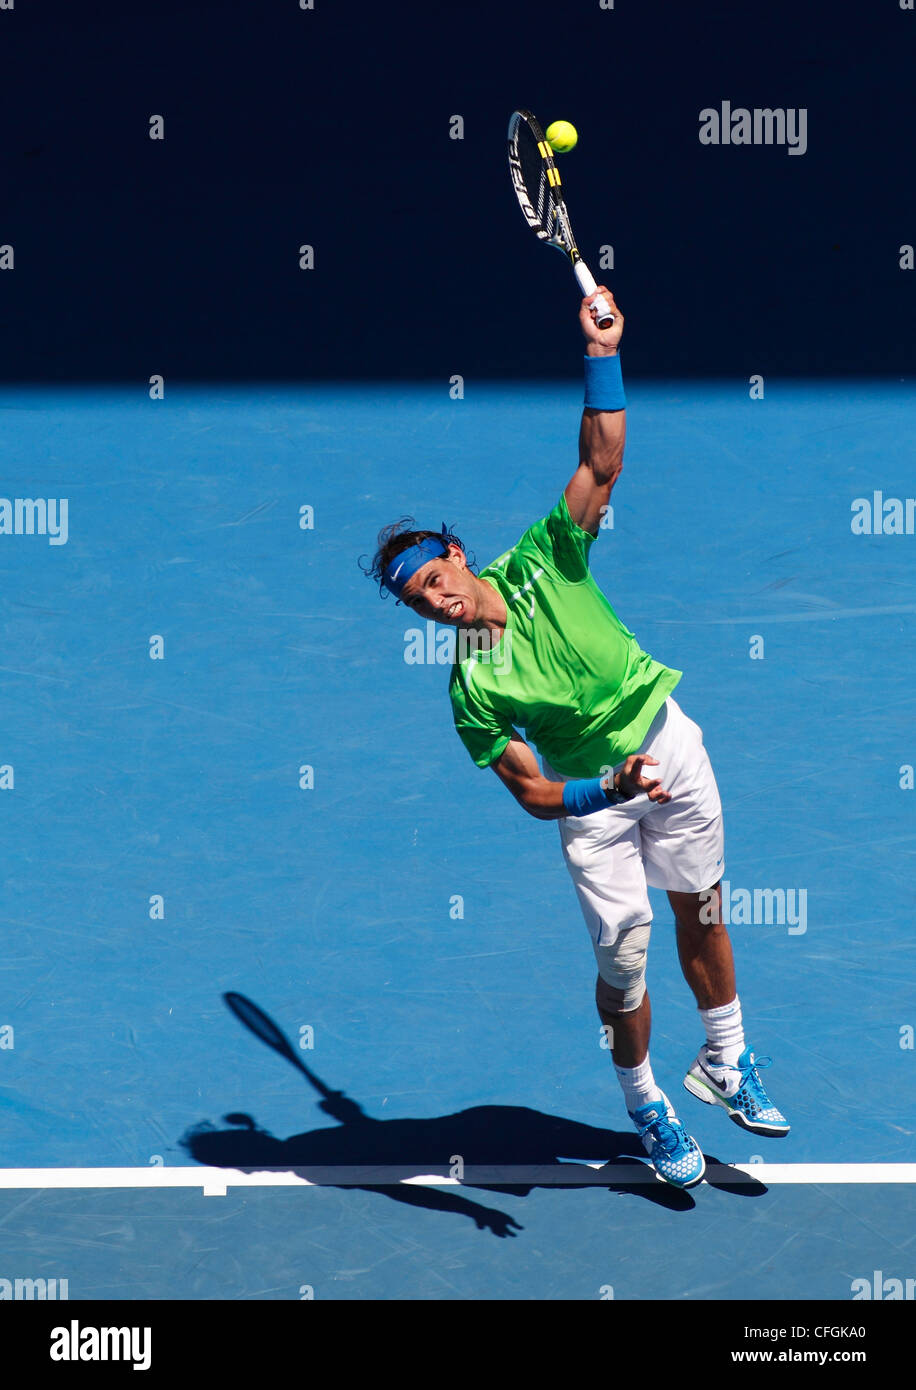 Rafael Nadal (ESP) à l'Australian Open 2012, tournoi du Grand Chelem de tennis de l'ITF, Melbourne Park, Australie. Banque D'Images